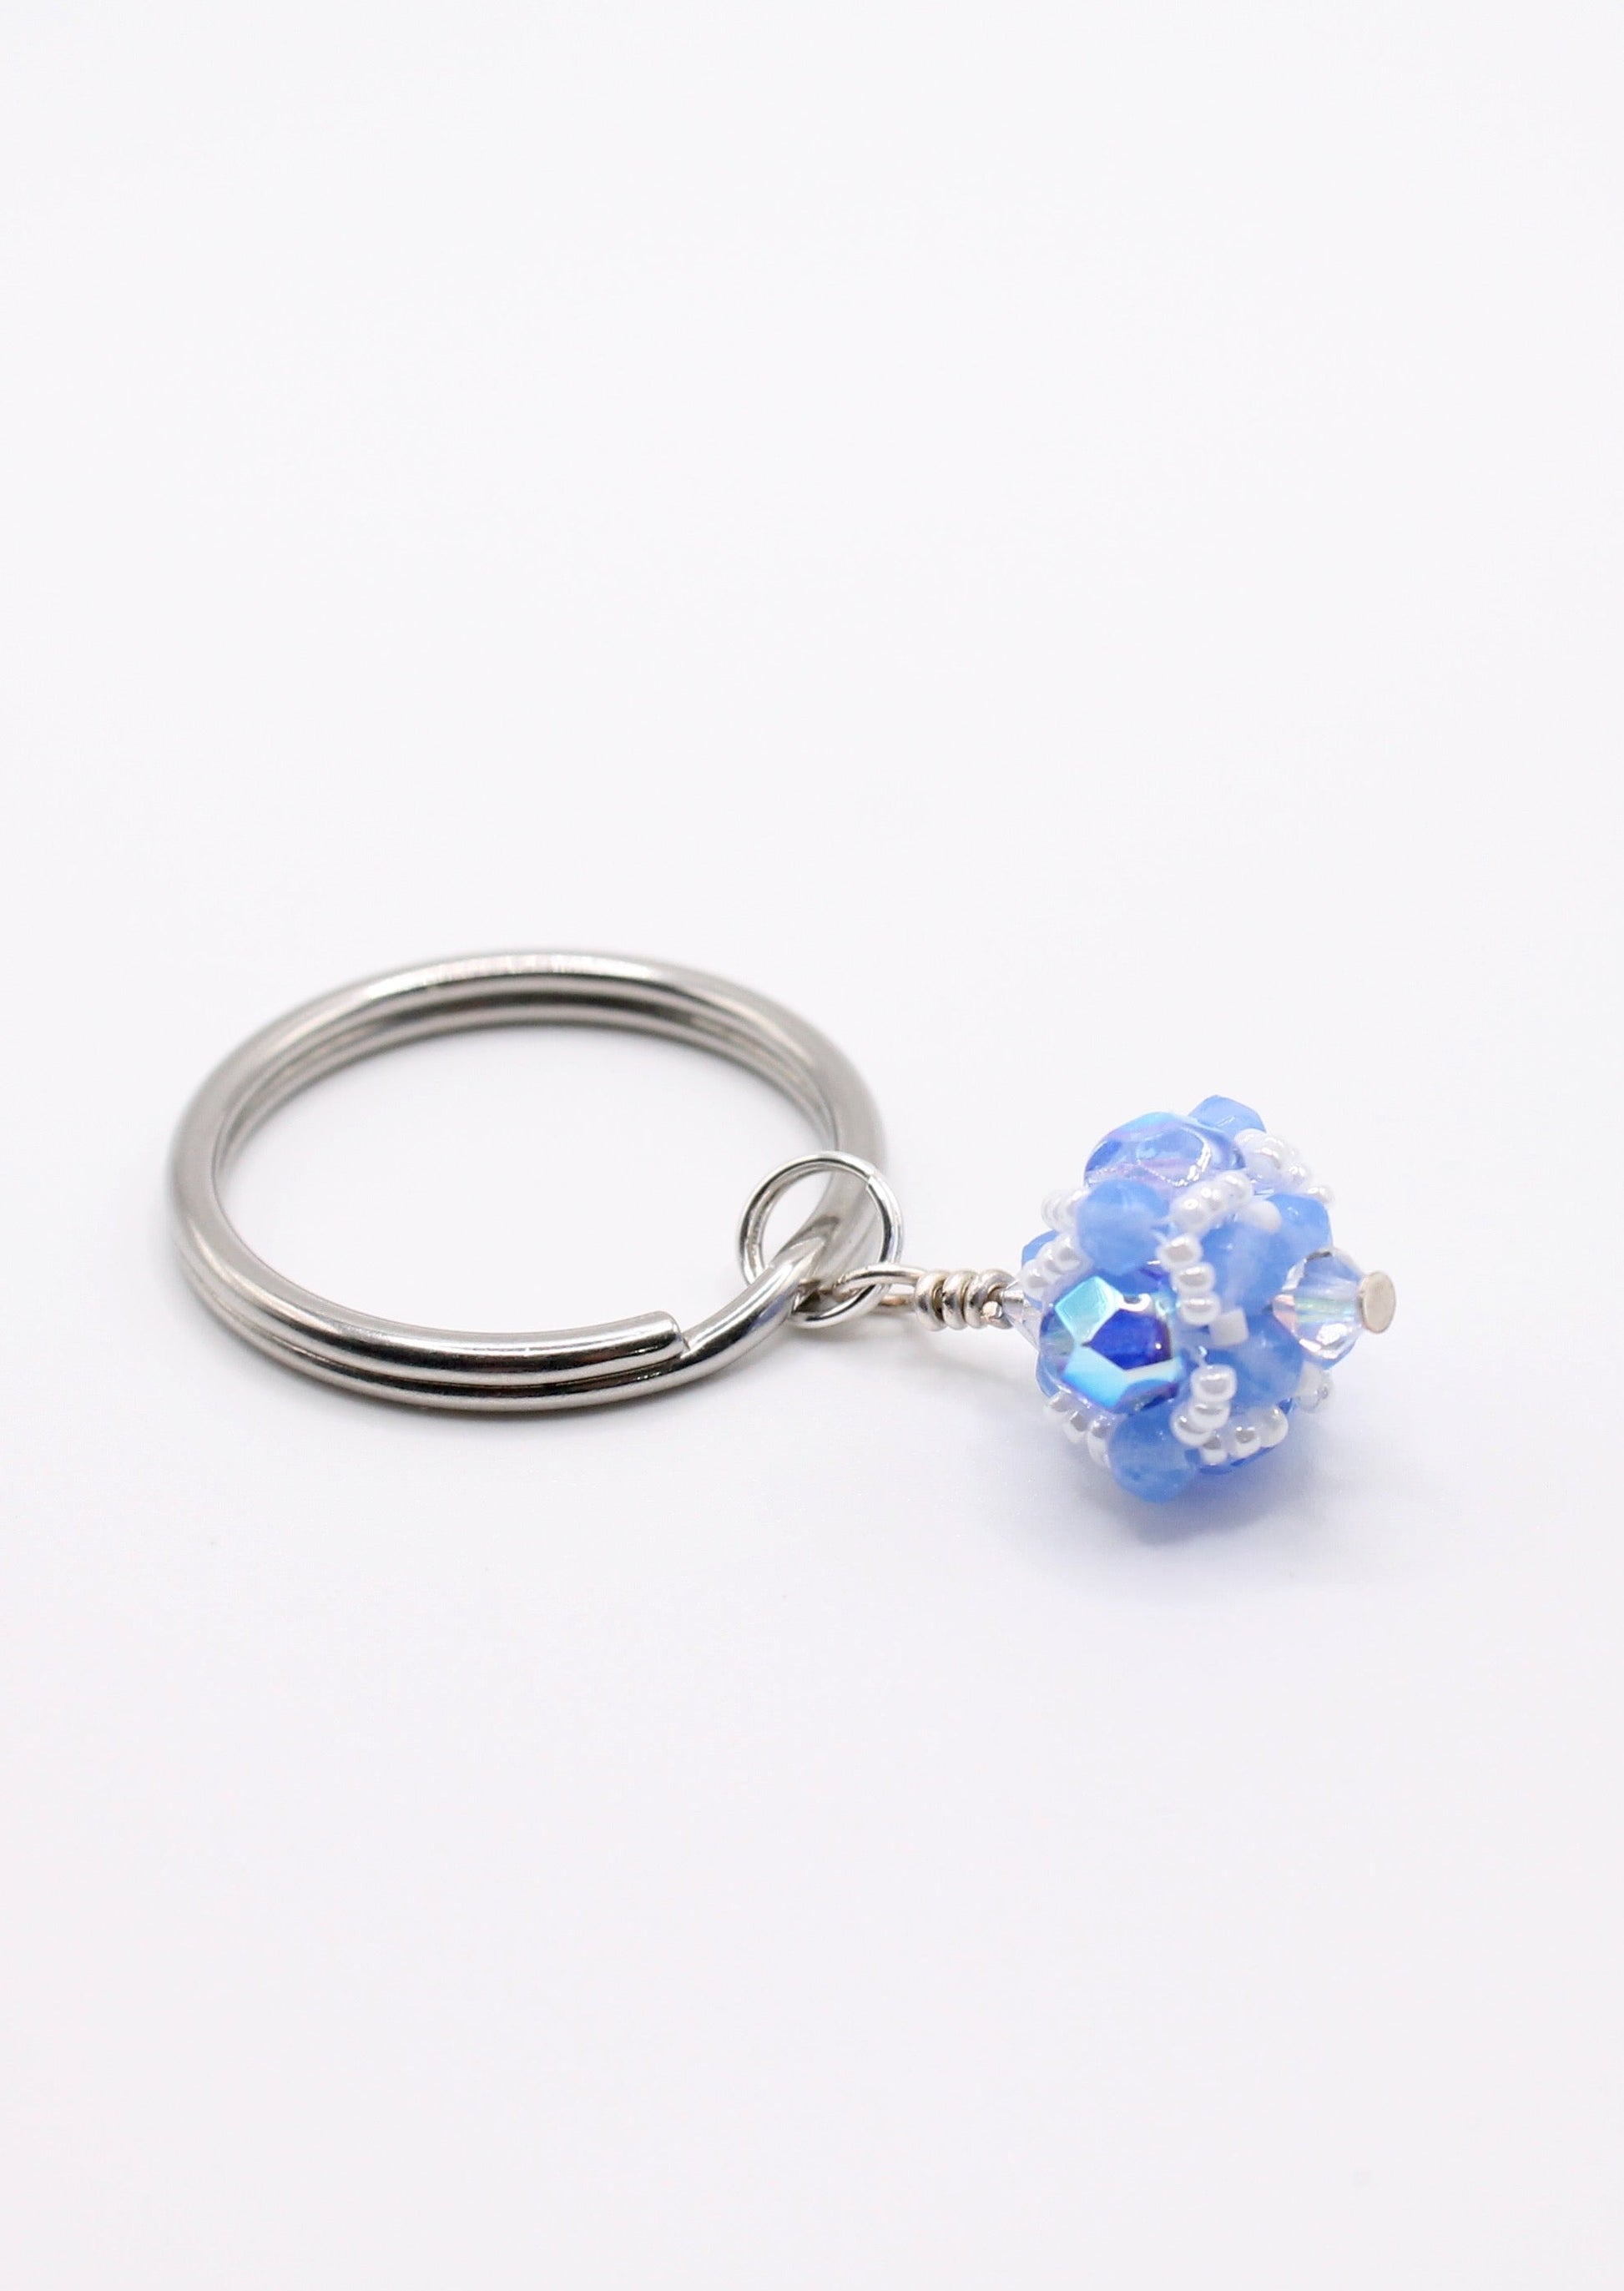 Key Ring Gift for Teachers Light Blue Keychain